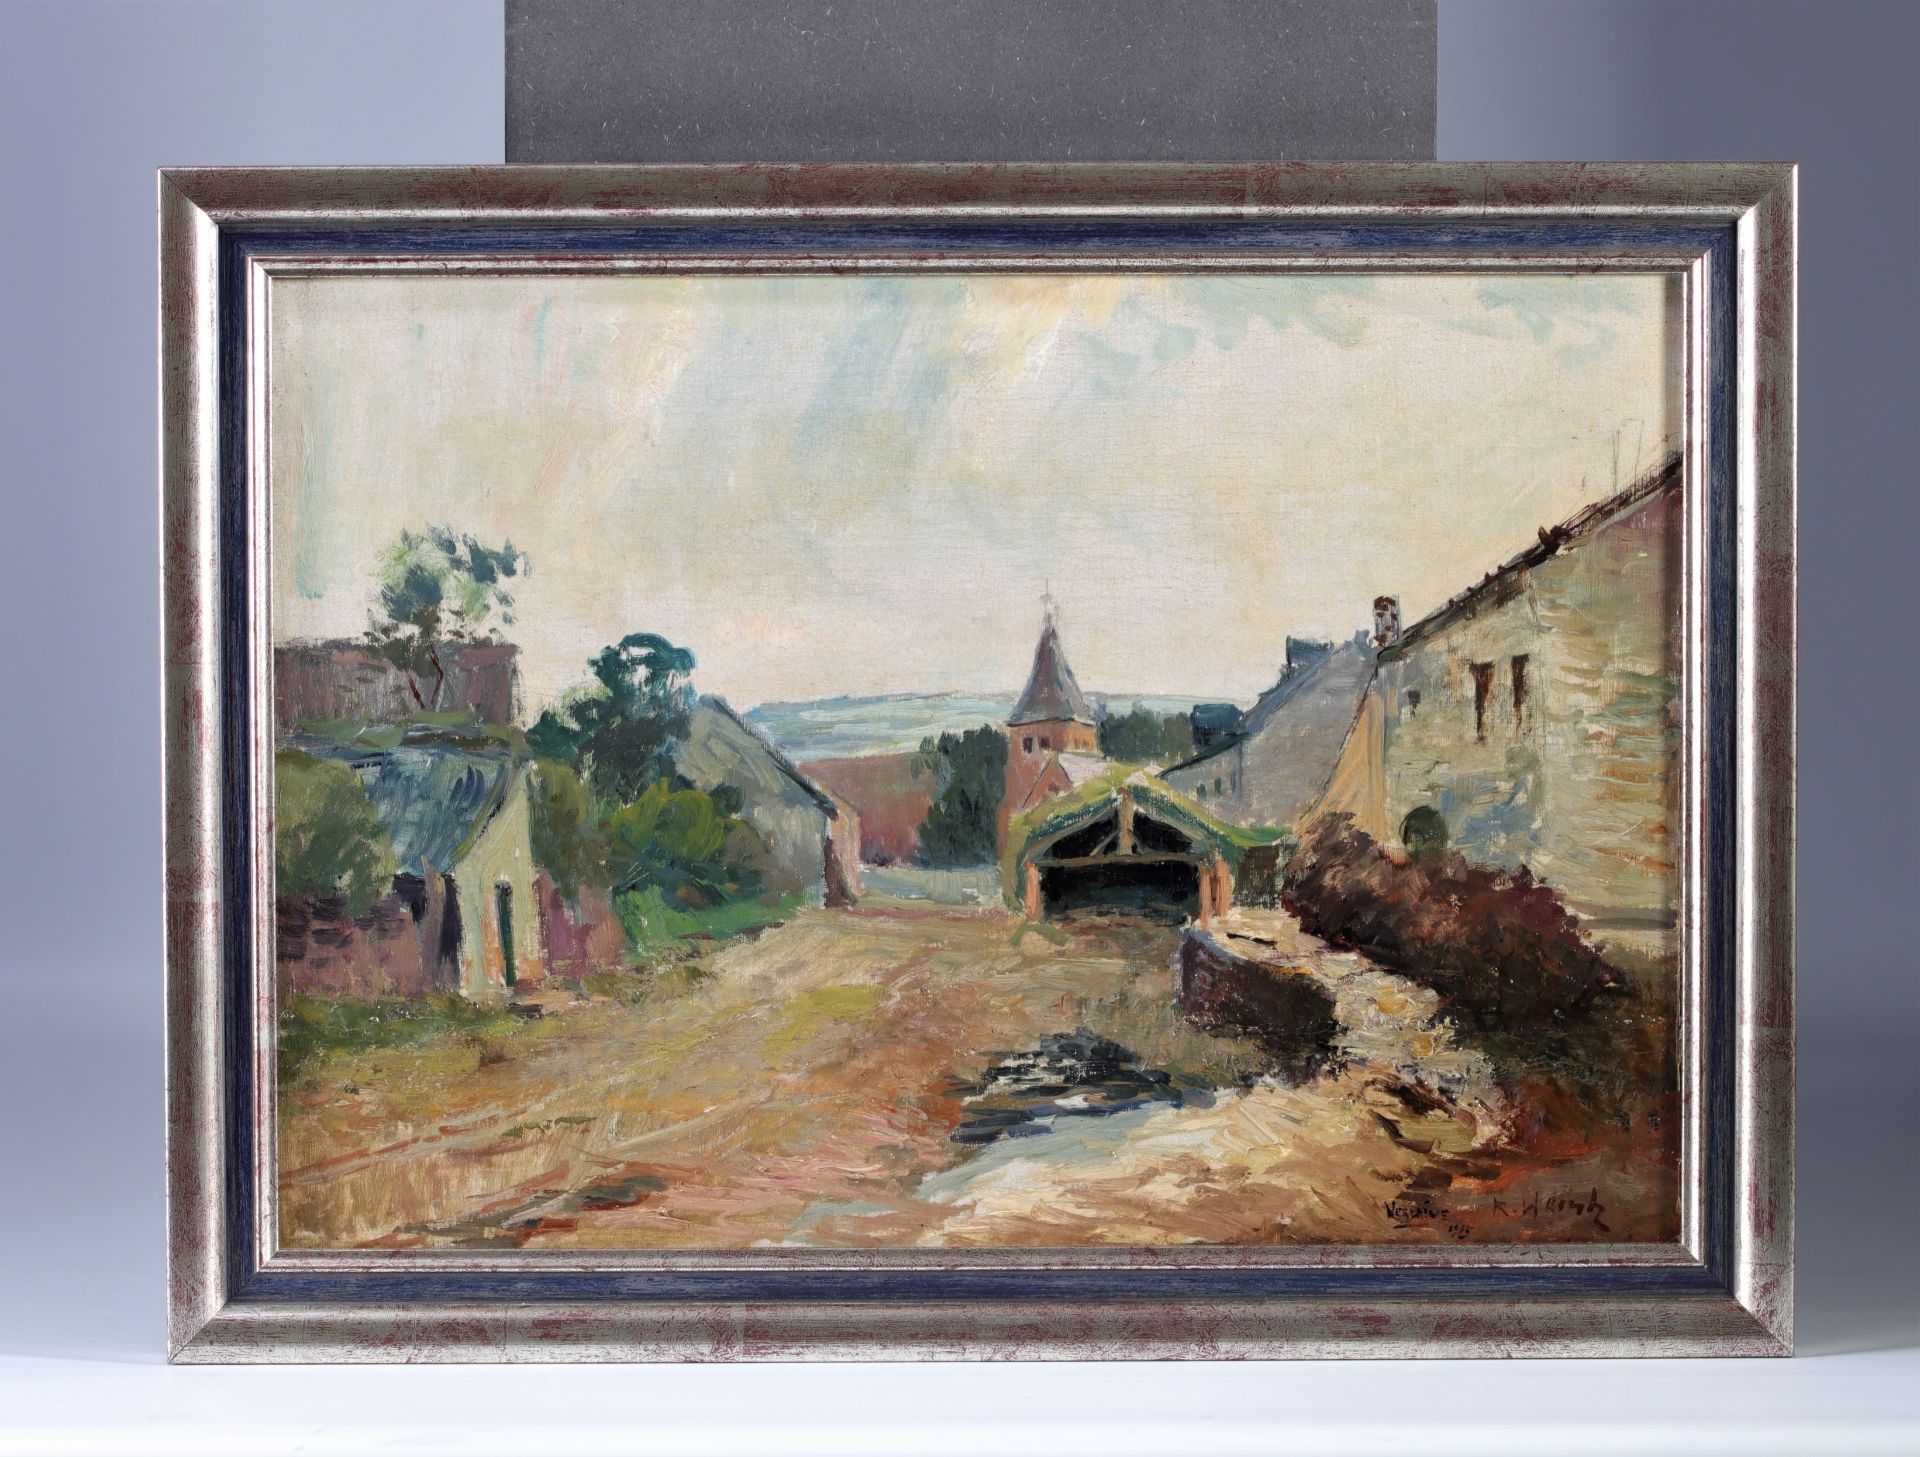 HEINTZ Richard (1871-1929) Oil on canvas "Verlaine sur Ourthe" (Verlaine on Ourthe)